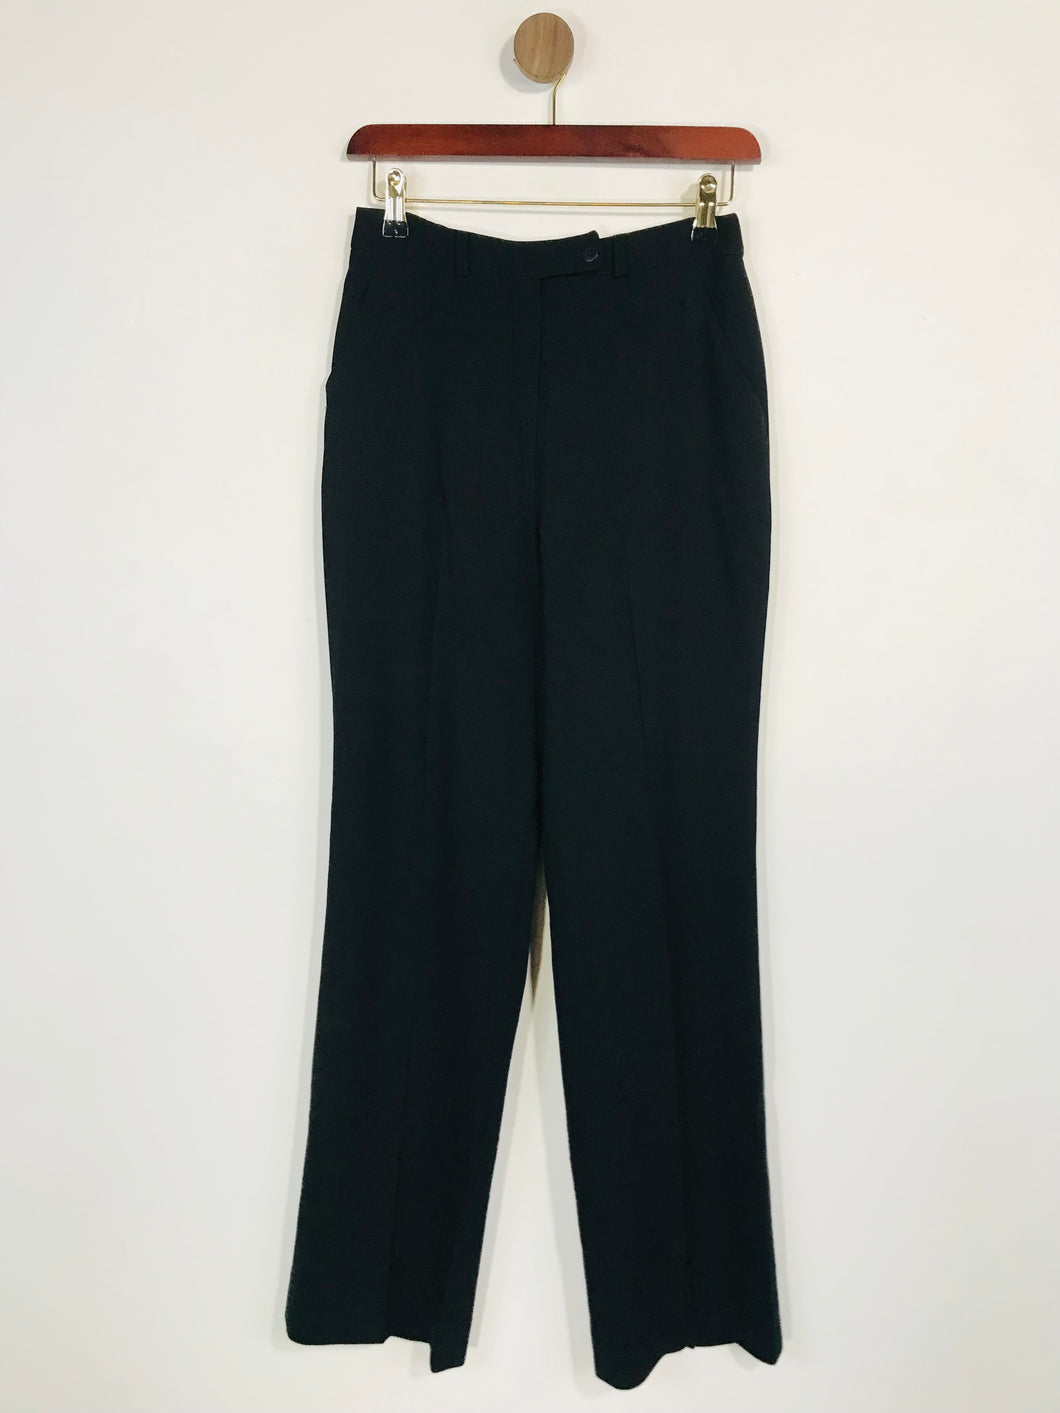 Irene Van Ryb Women's Wool Smart Trousers | IT38 UK6 | Black